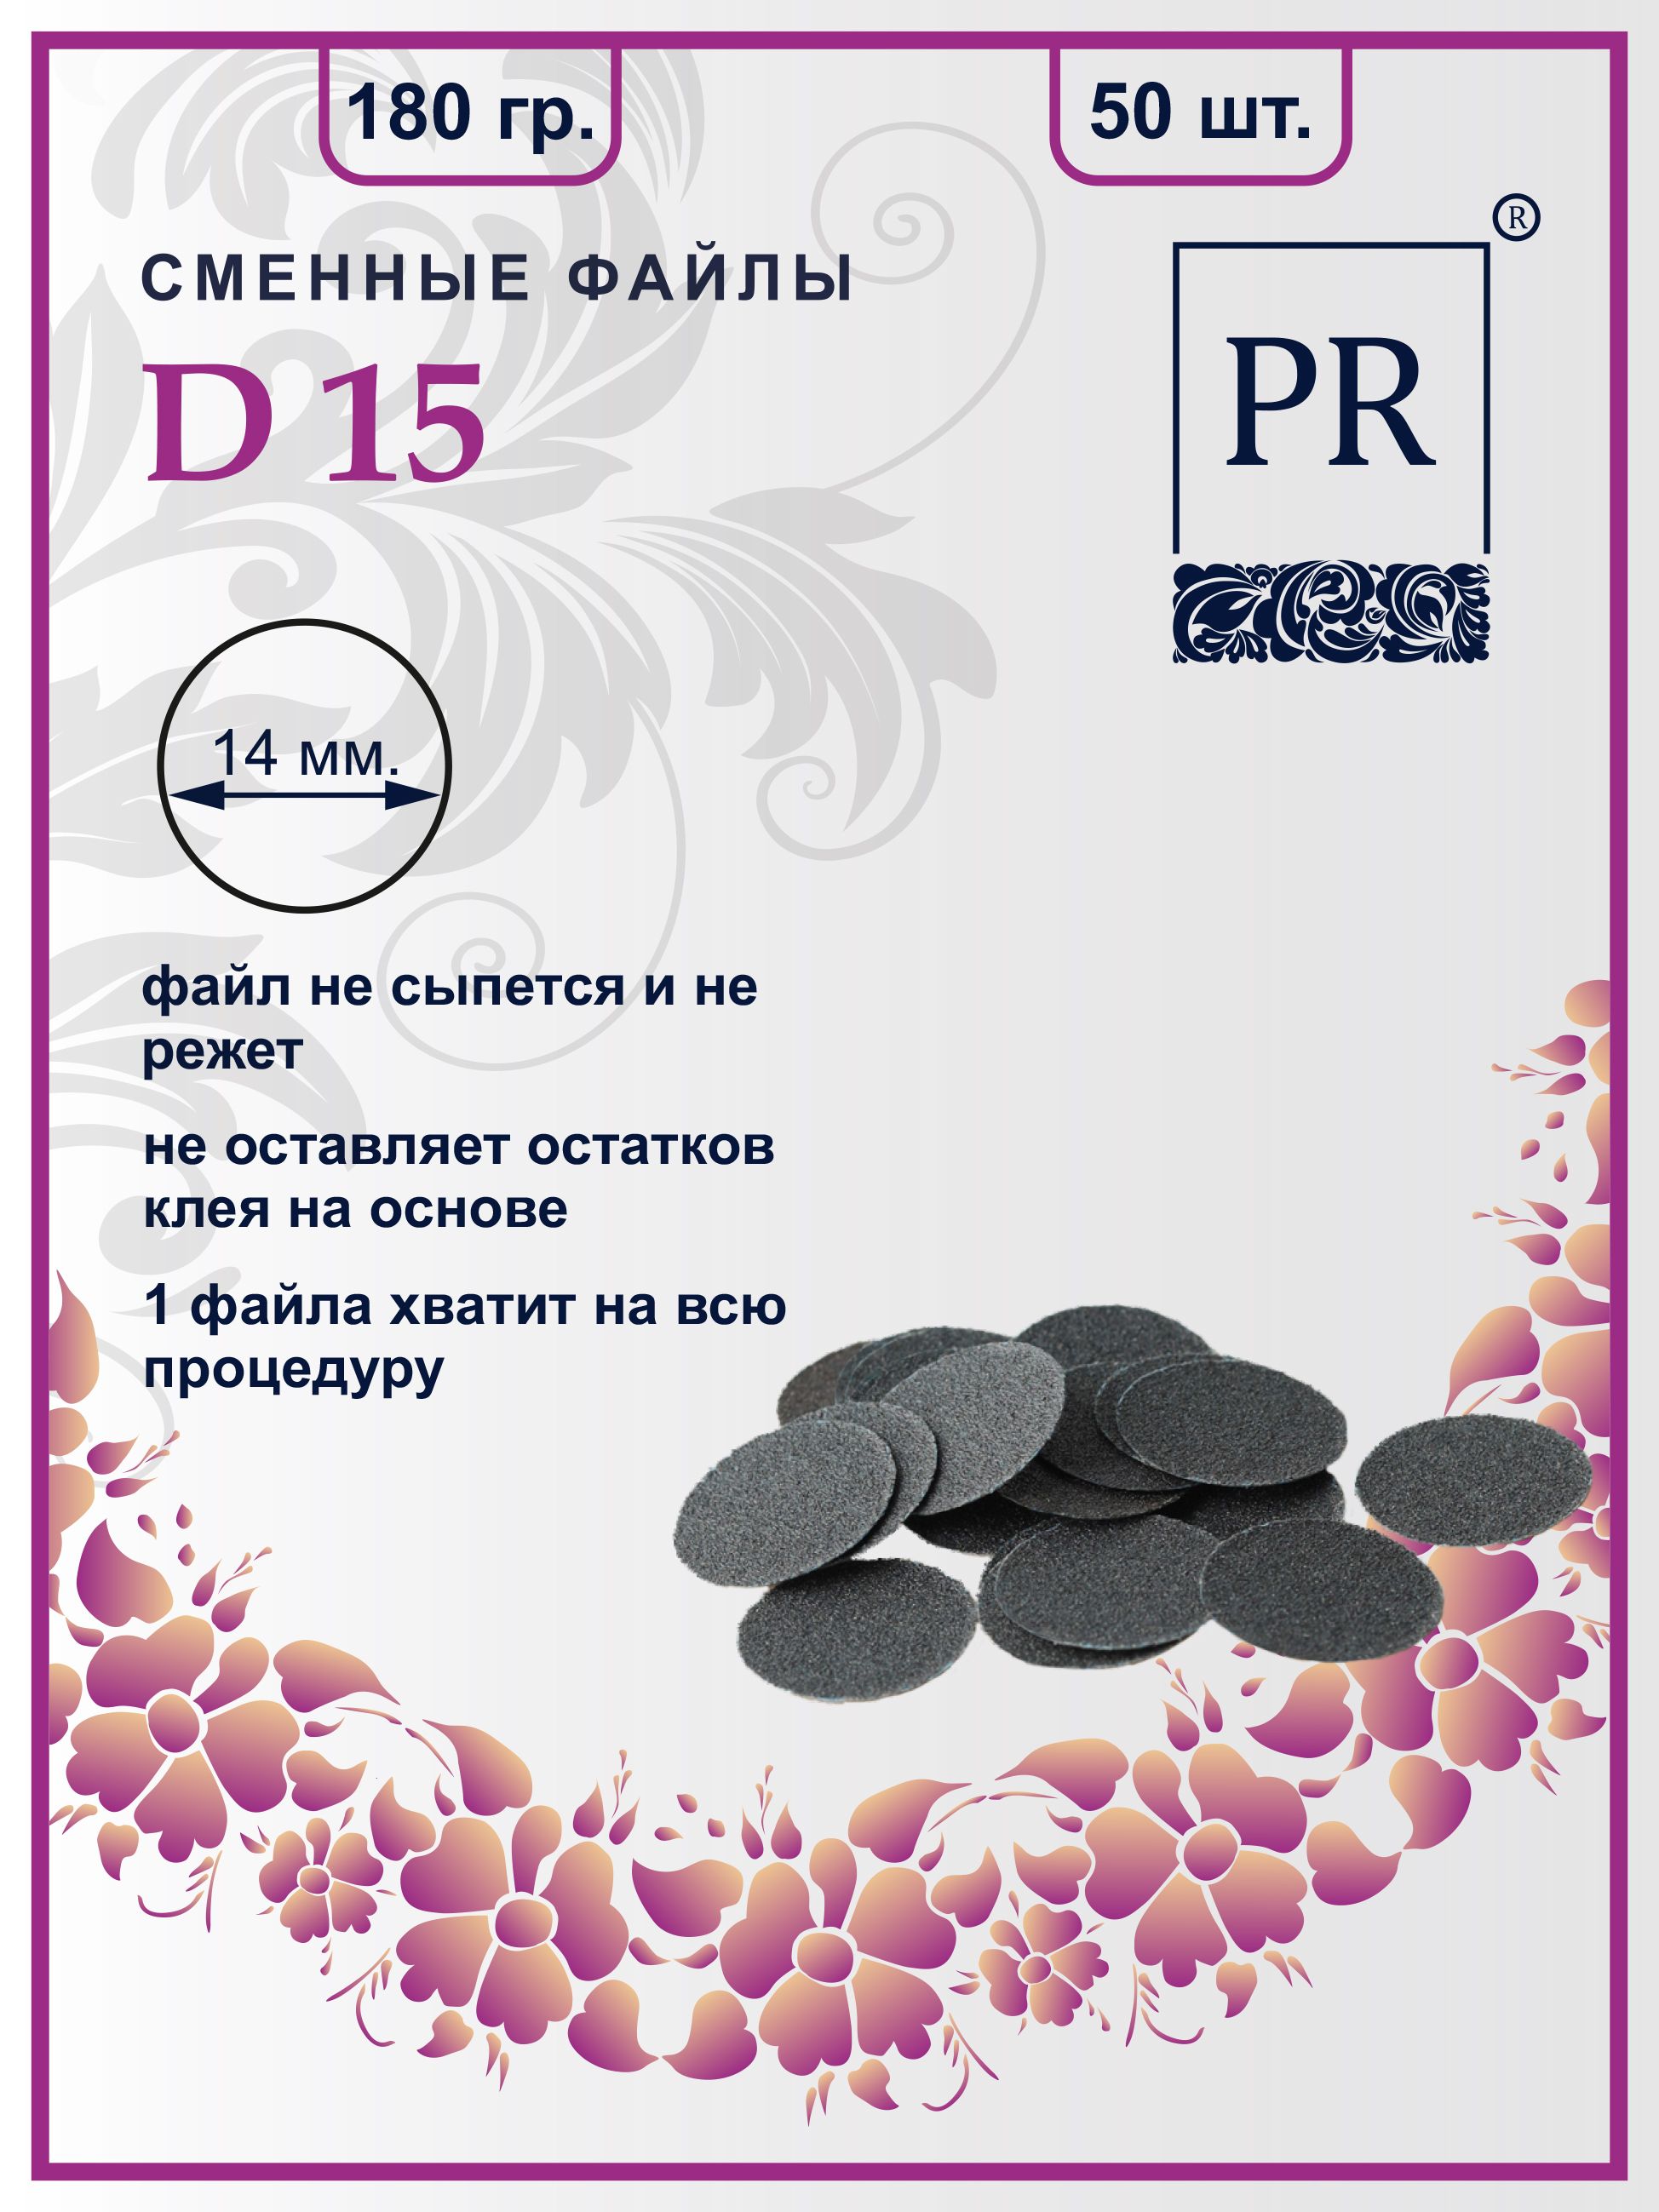 Сменные файлы Pilochki Russia диски для педикюра для диска S 180 грит 50 штук soul of russia kaliningrad 100